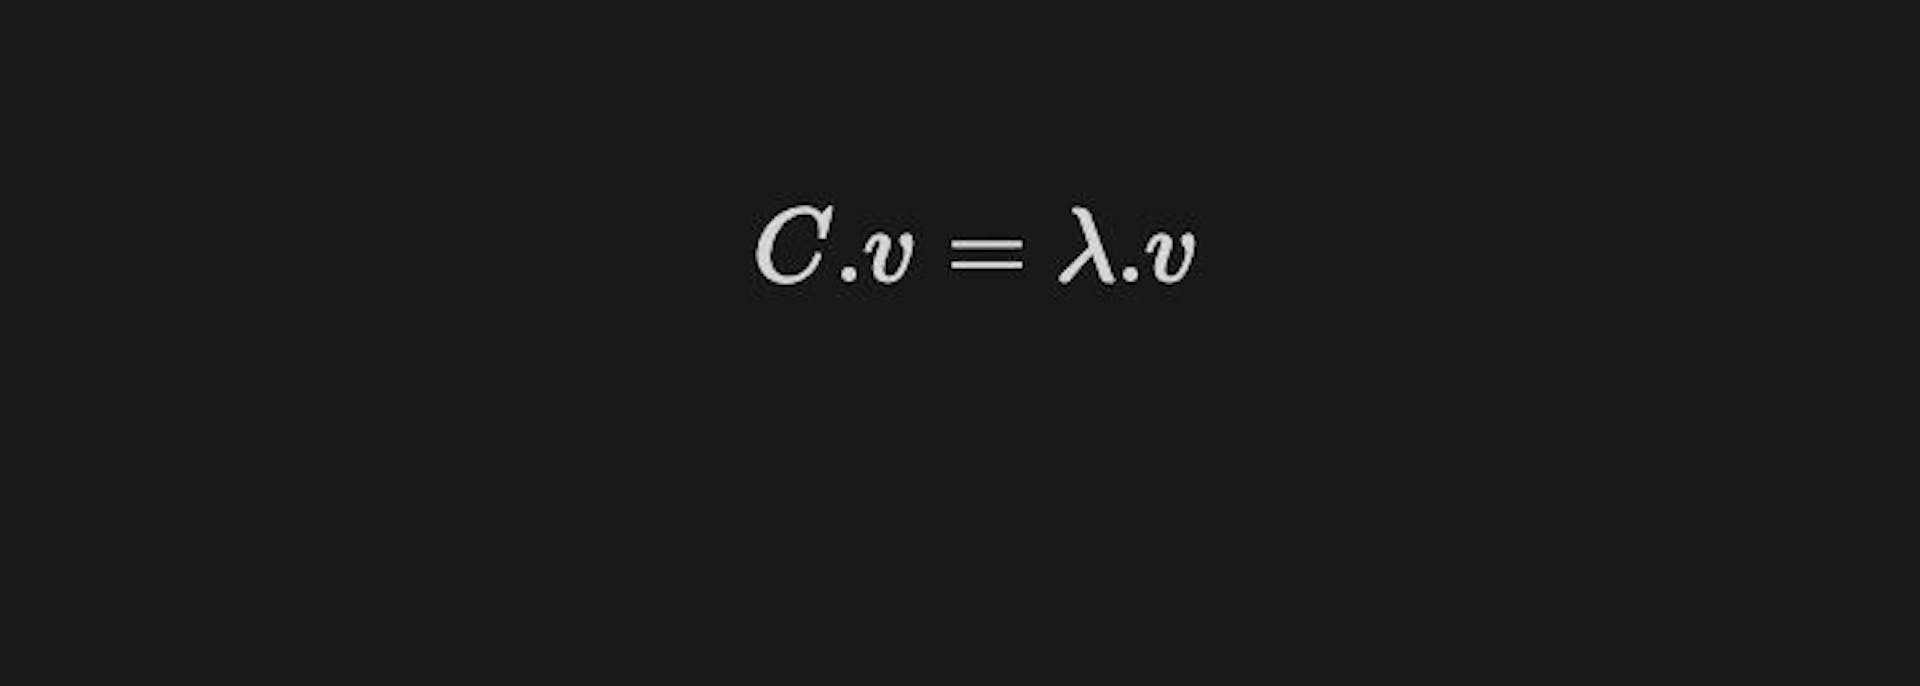 eigenvalue equation